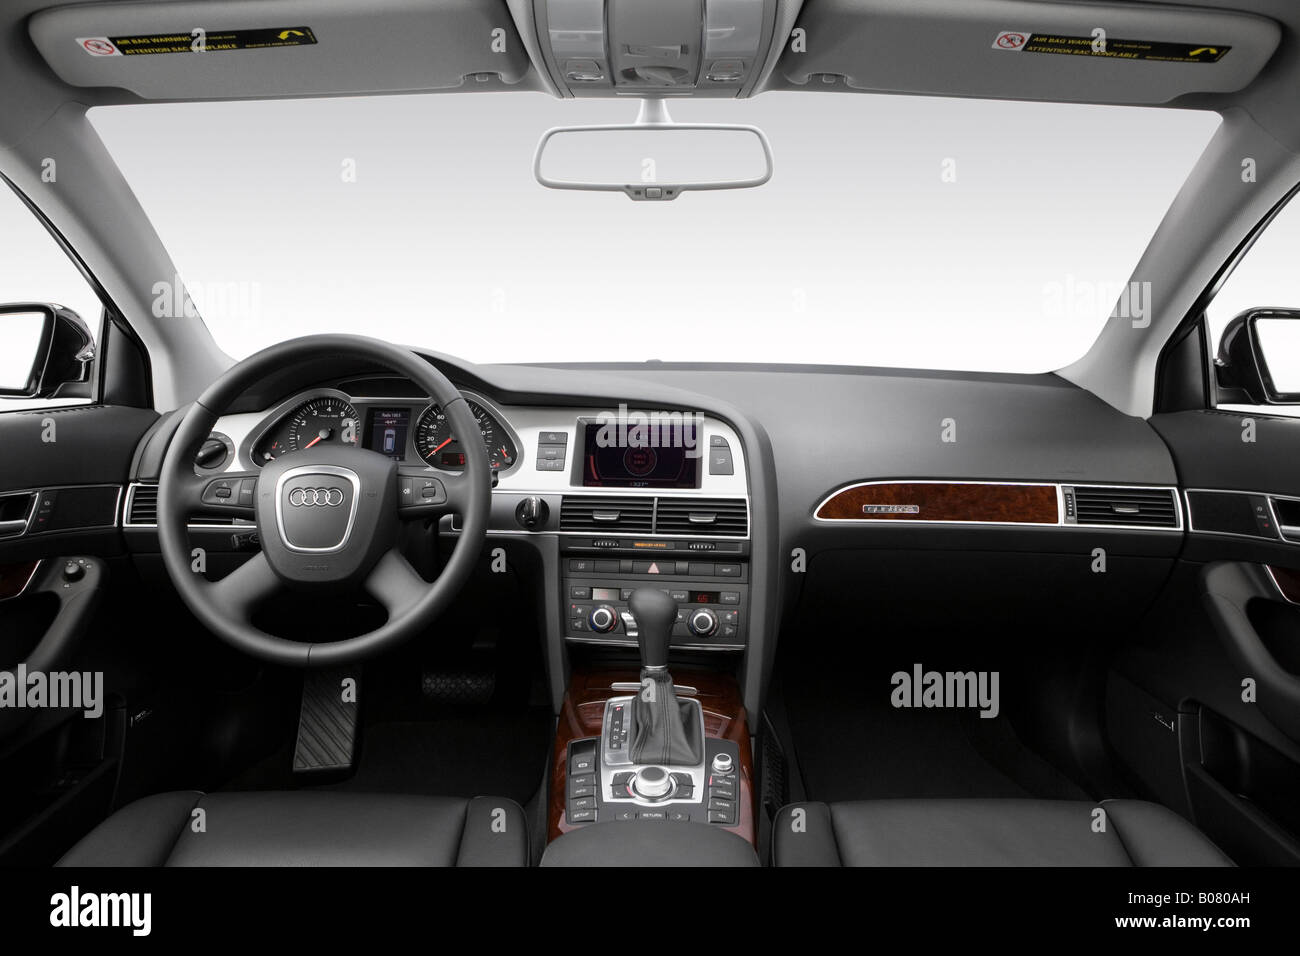 2008 Audi A6 Avant 3.2 FSI quattro in Black - Dashboard, center console,  gear shifter view Stock Photo - Alamy